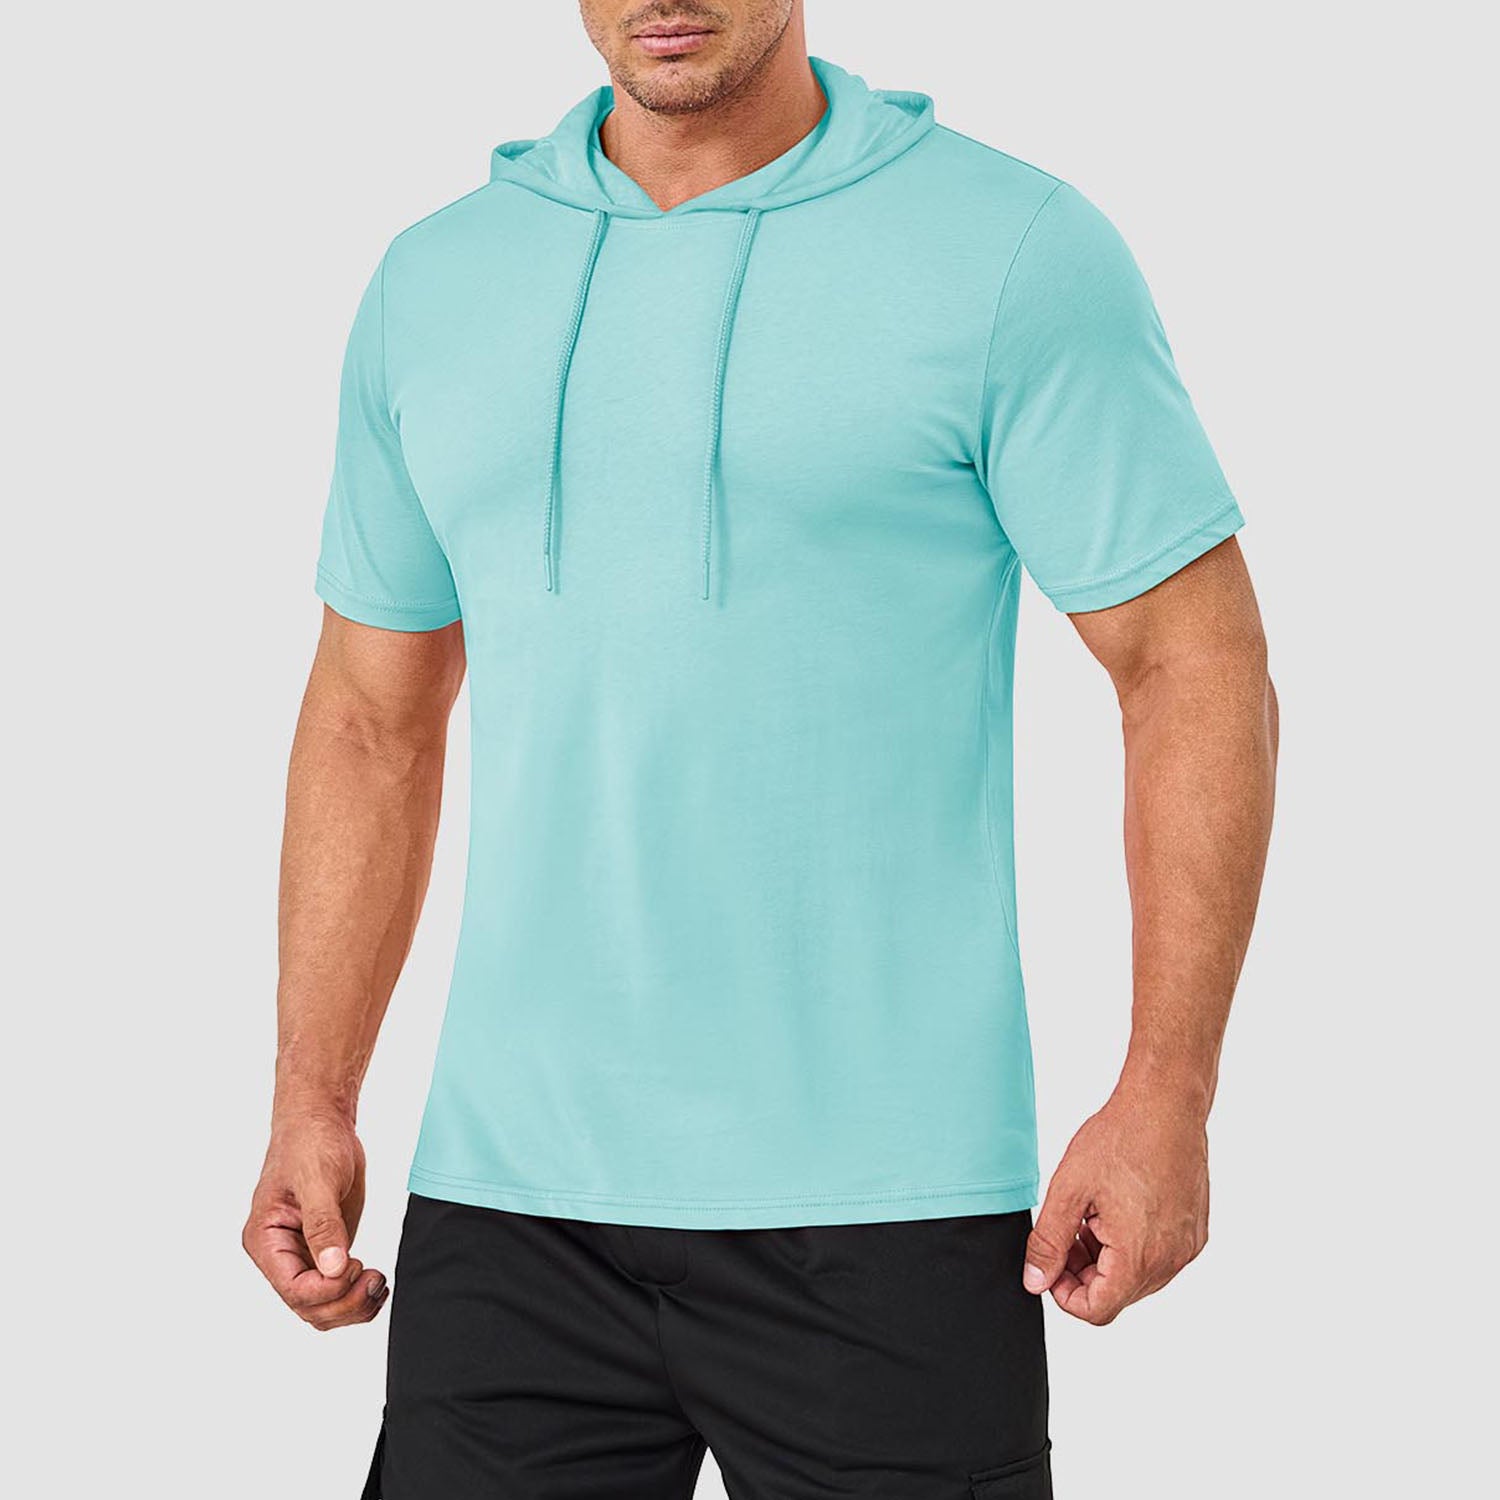 Mens Fashion Athletic Hoodies T-shirt Sport Sweatshirt Solid Color